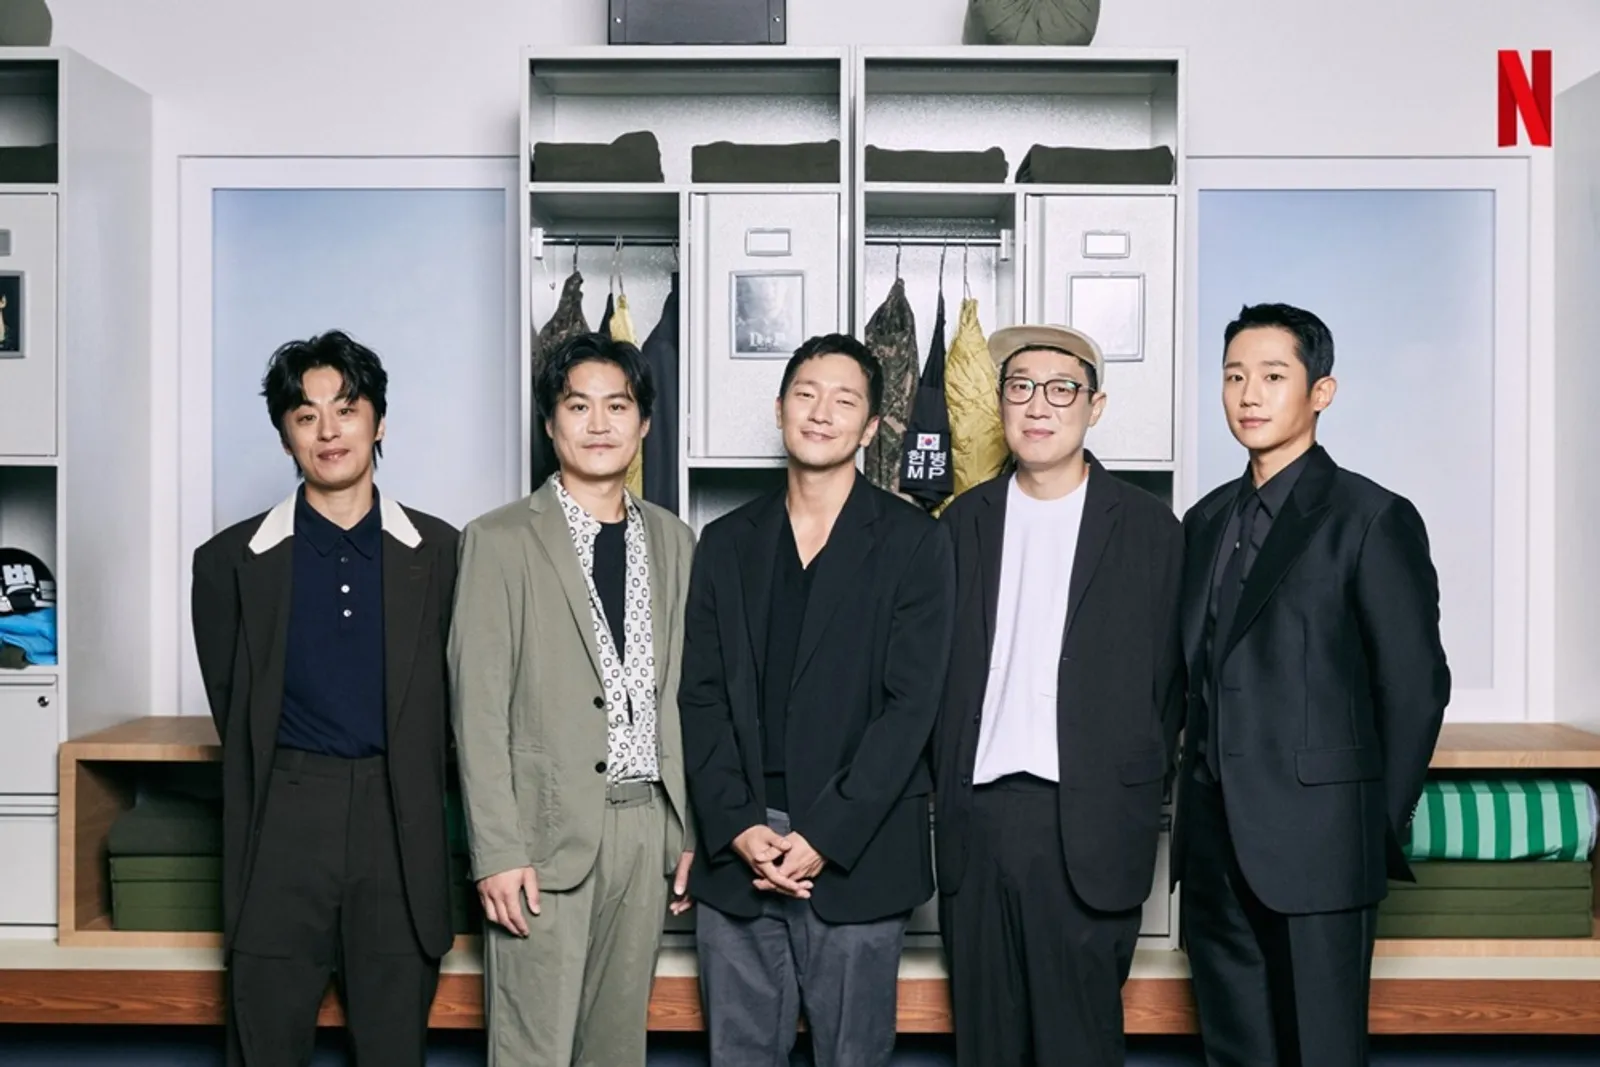 Merasa Dirugikan, Tim Produksi KDrama 'D.P' Digugat 7-Eleven Korea